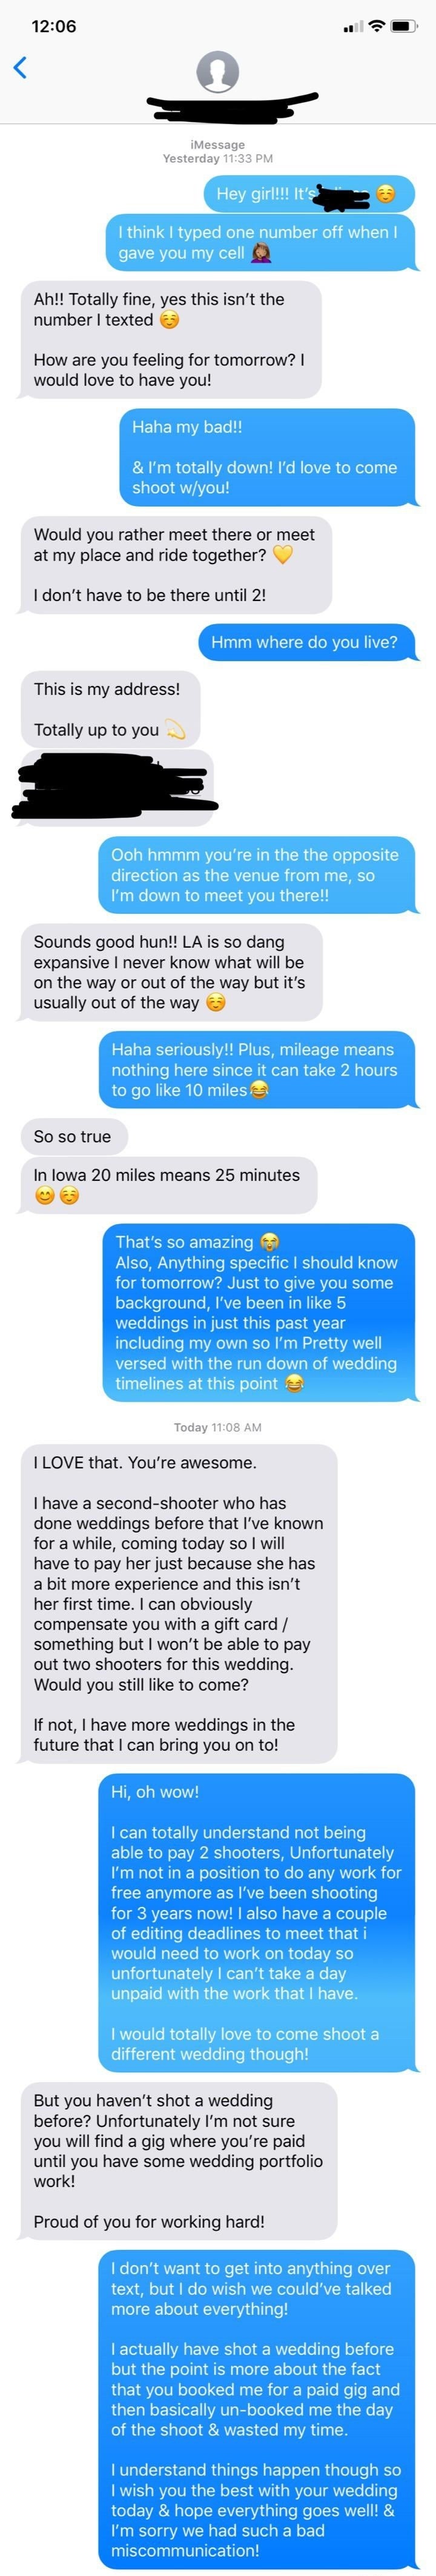 Screenshot of a text conversation